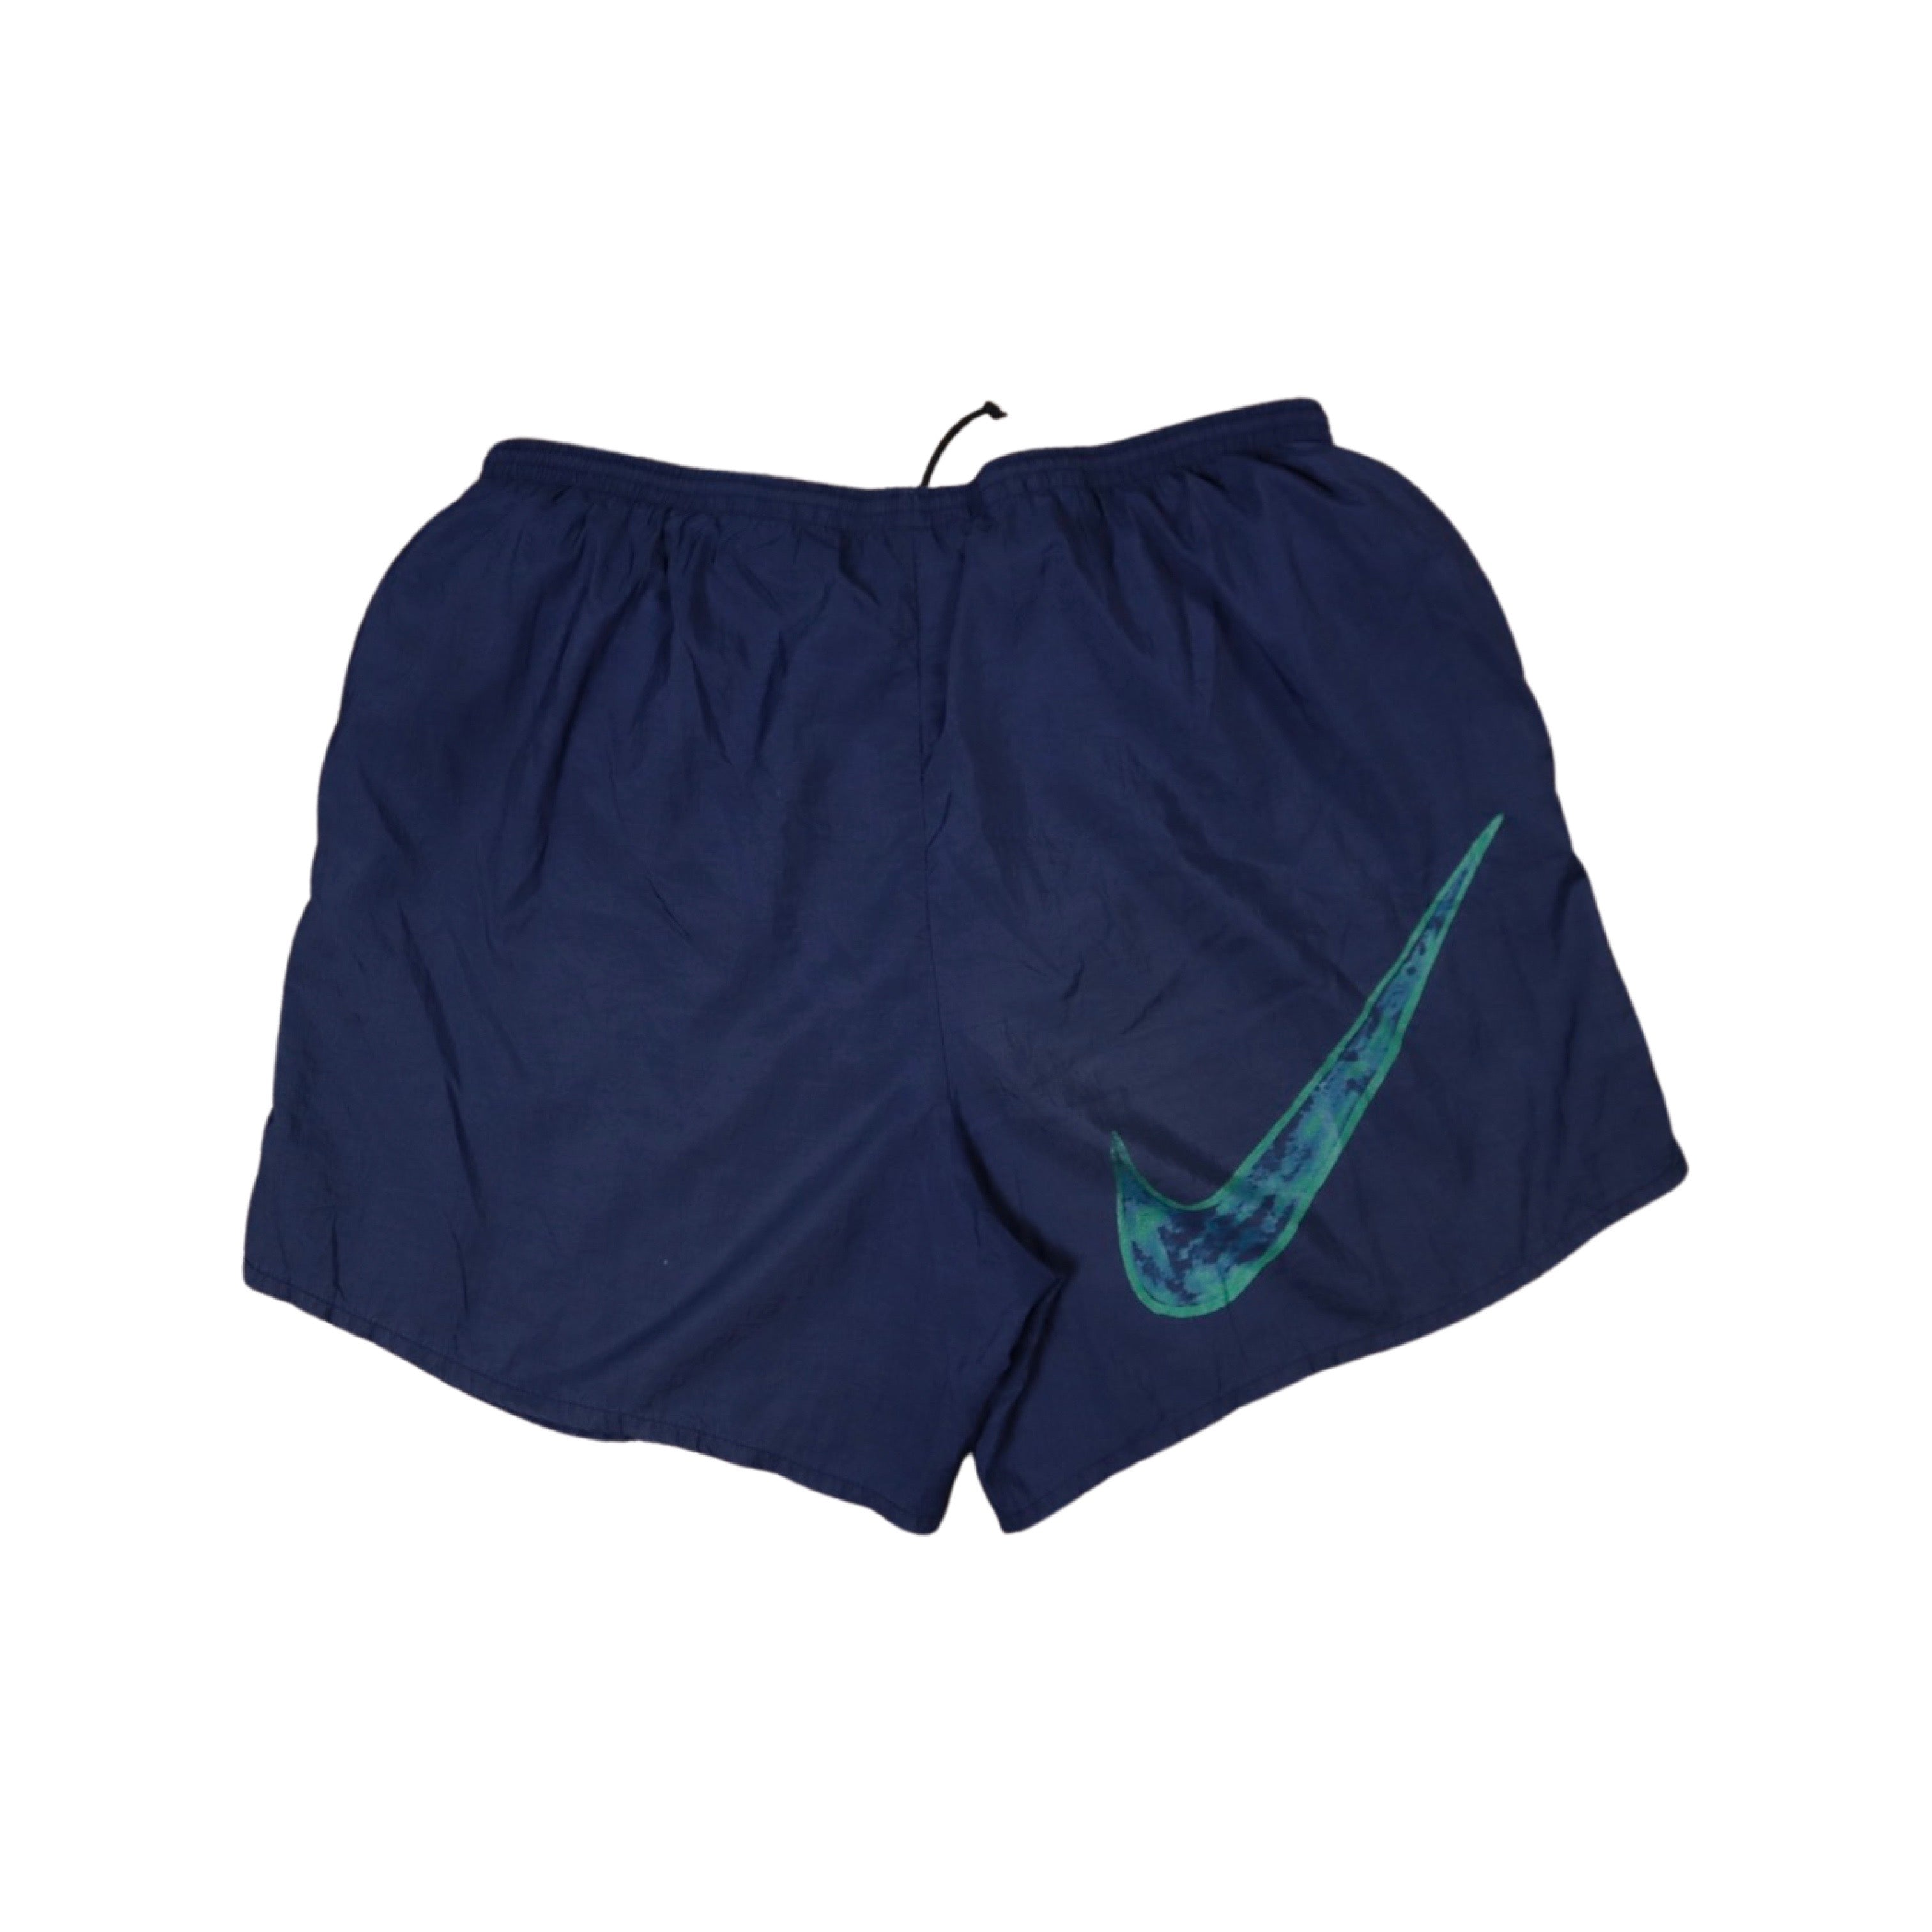 Navy Nike 90s Shorts (Large)